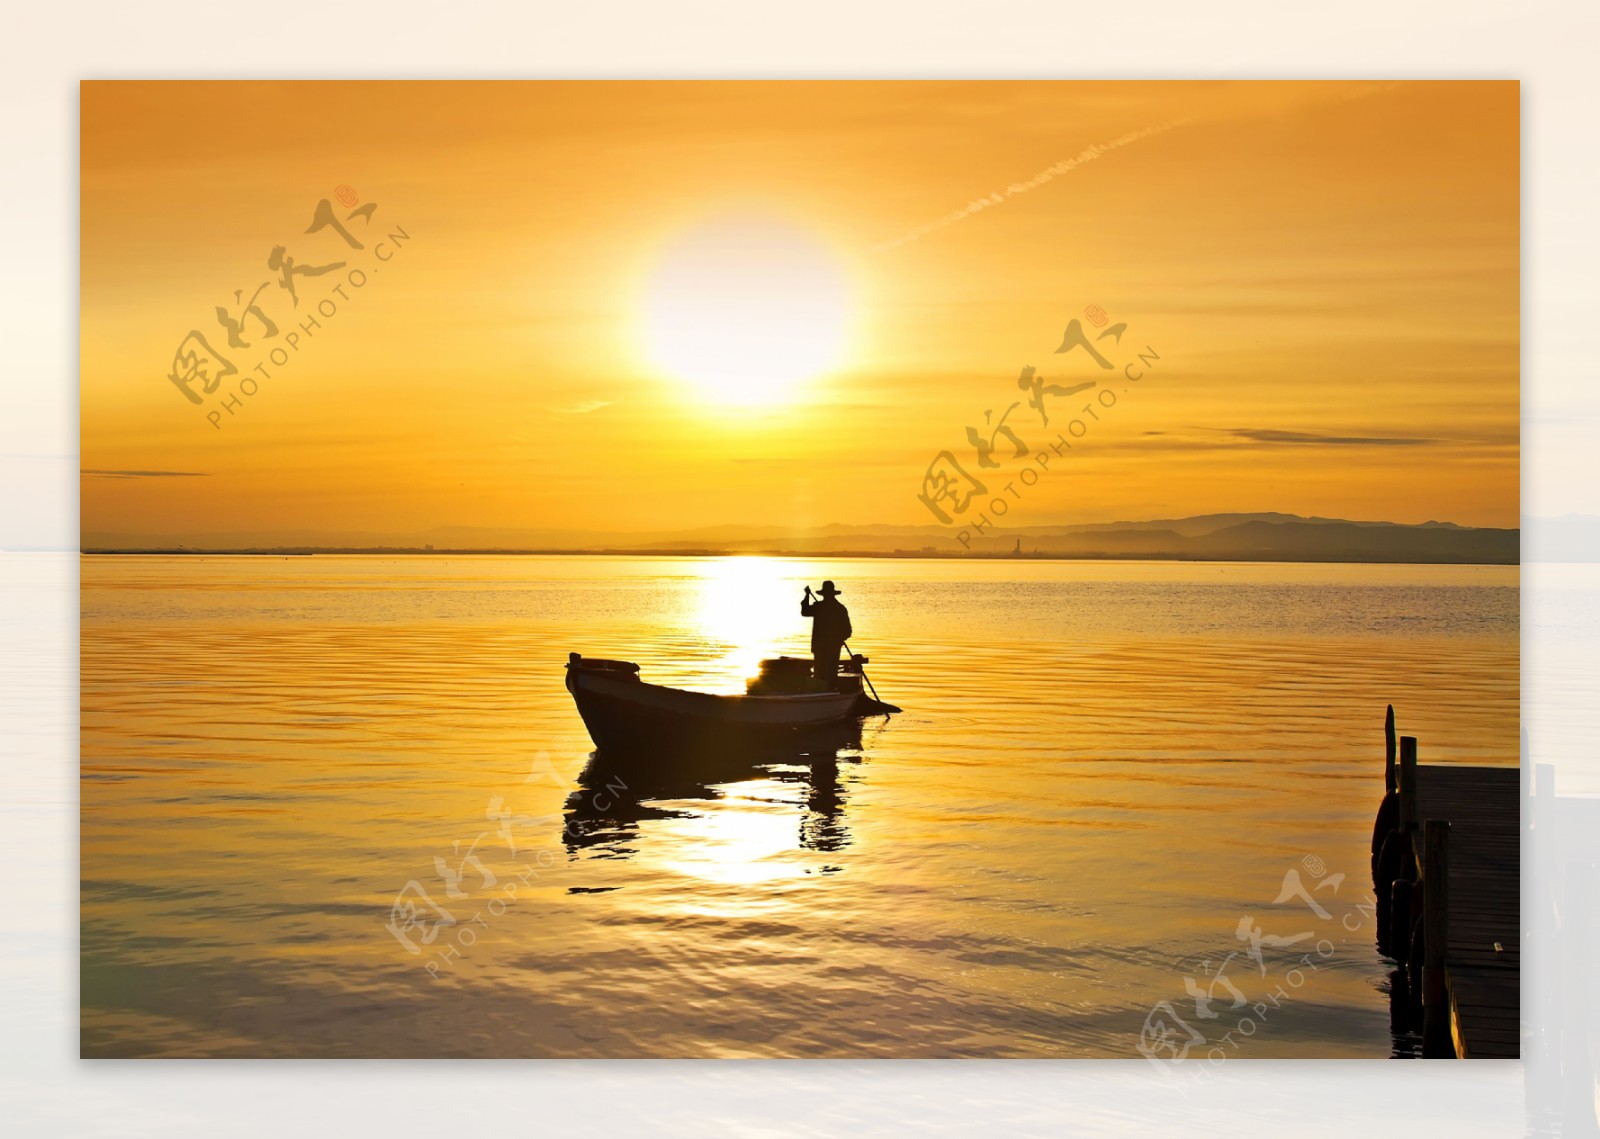 夕阳与海面上的小船图片